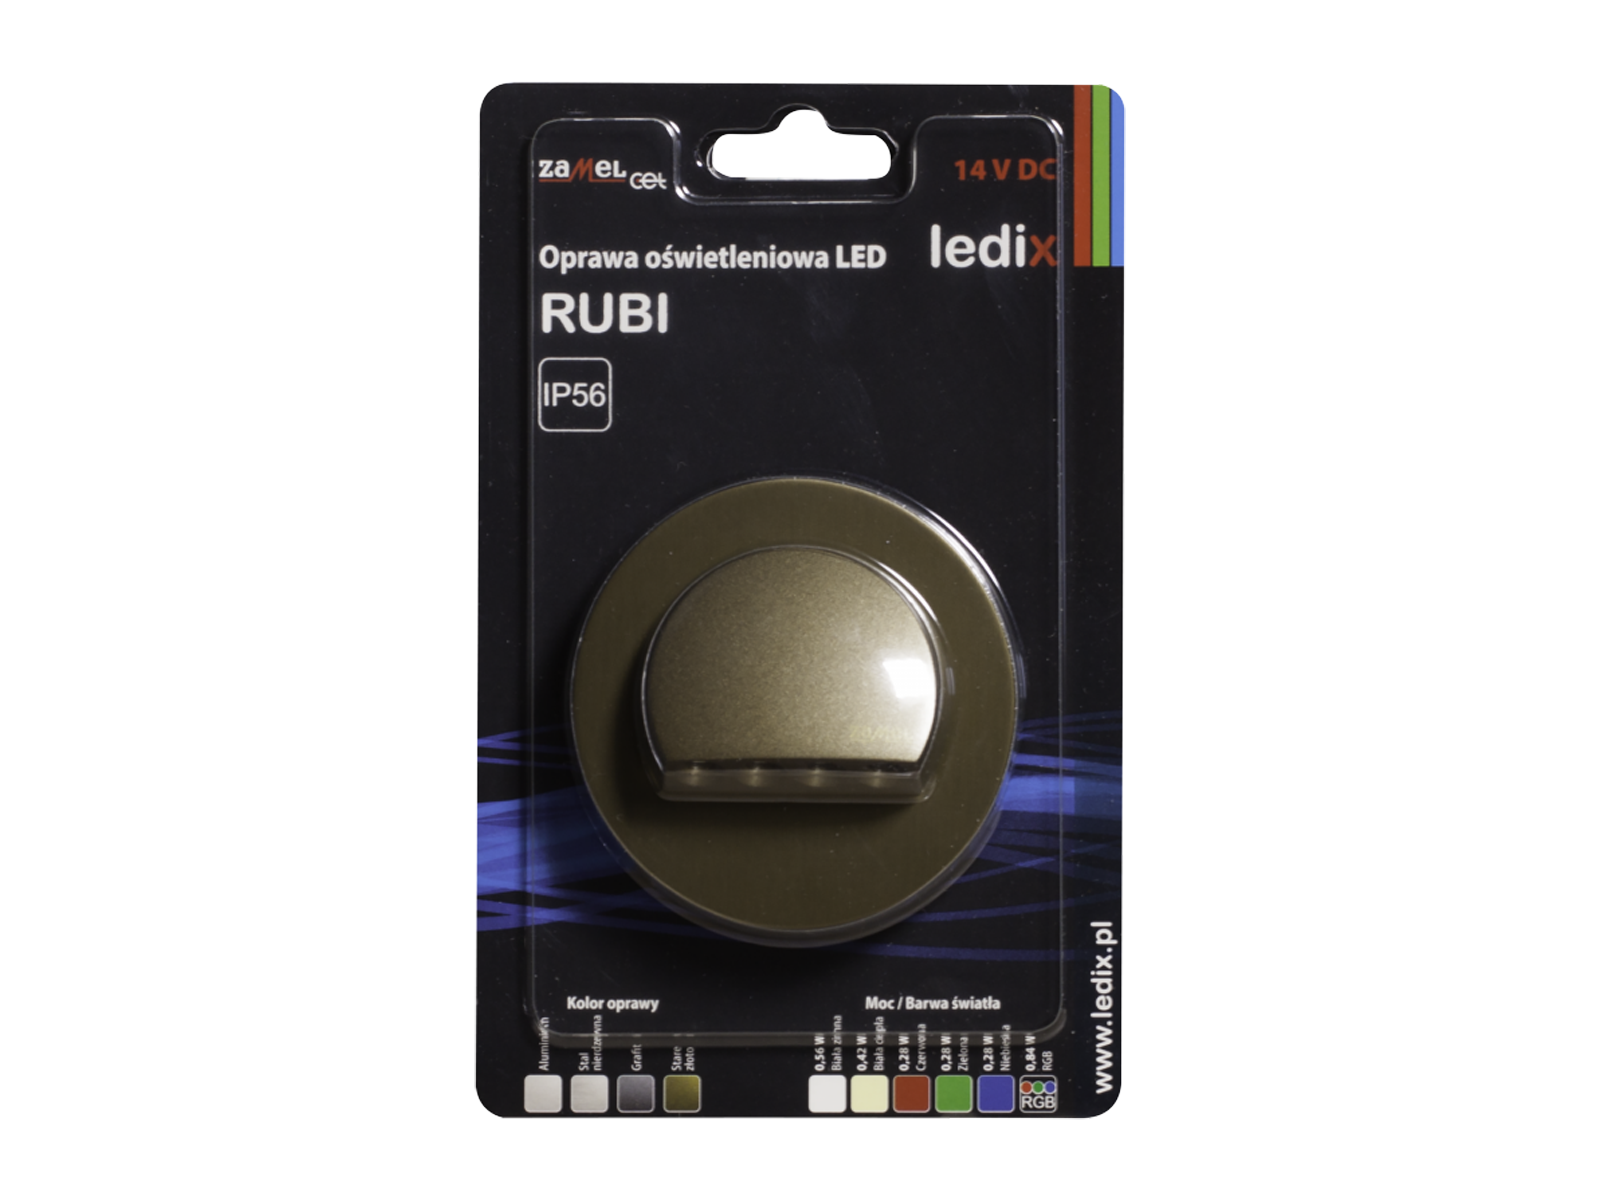 Svítidlo LED na omítku LEDIX RUBI 14V DC, zlatá patina, teplá bílá, IP56